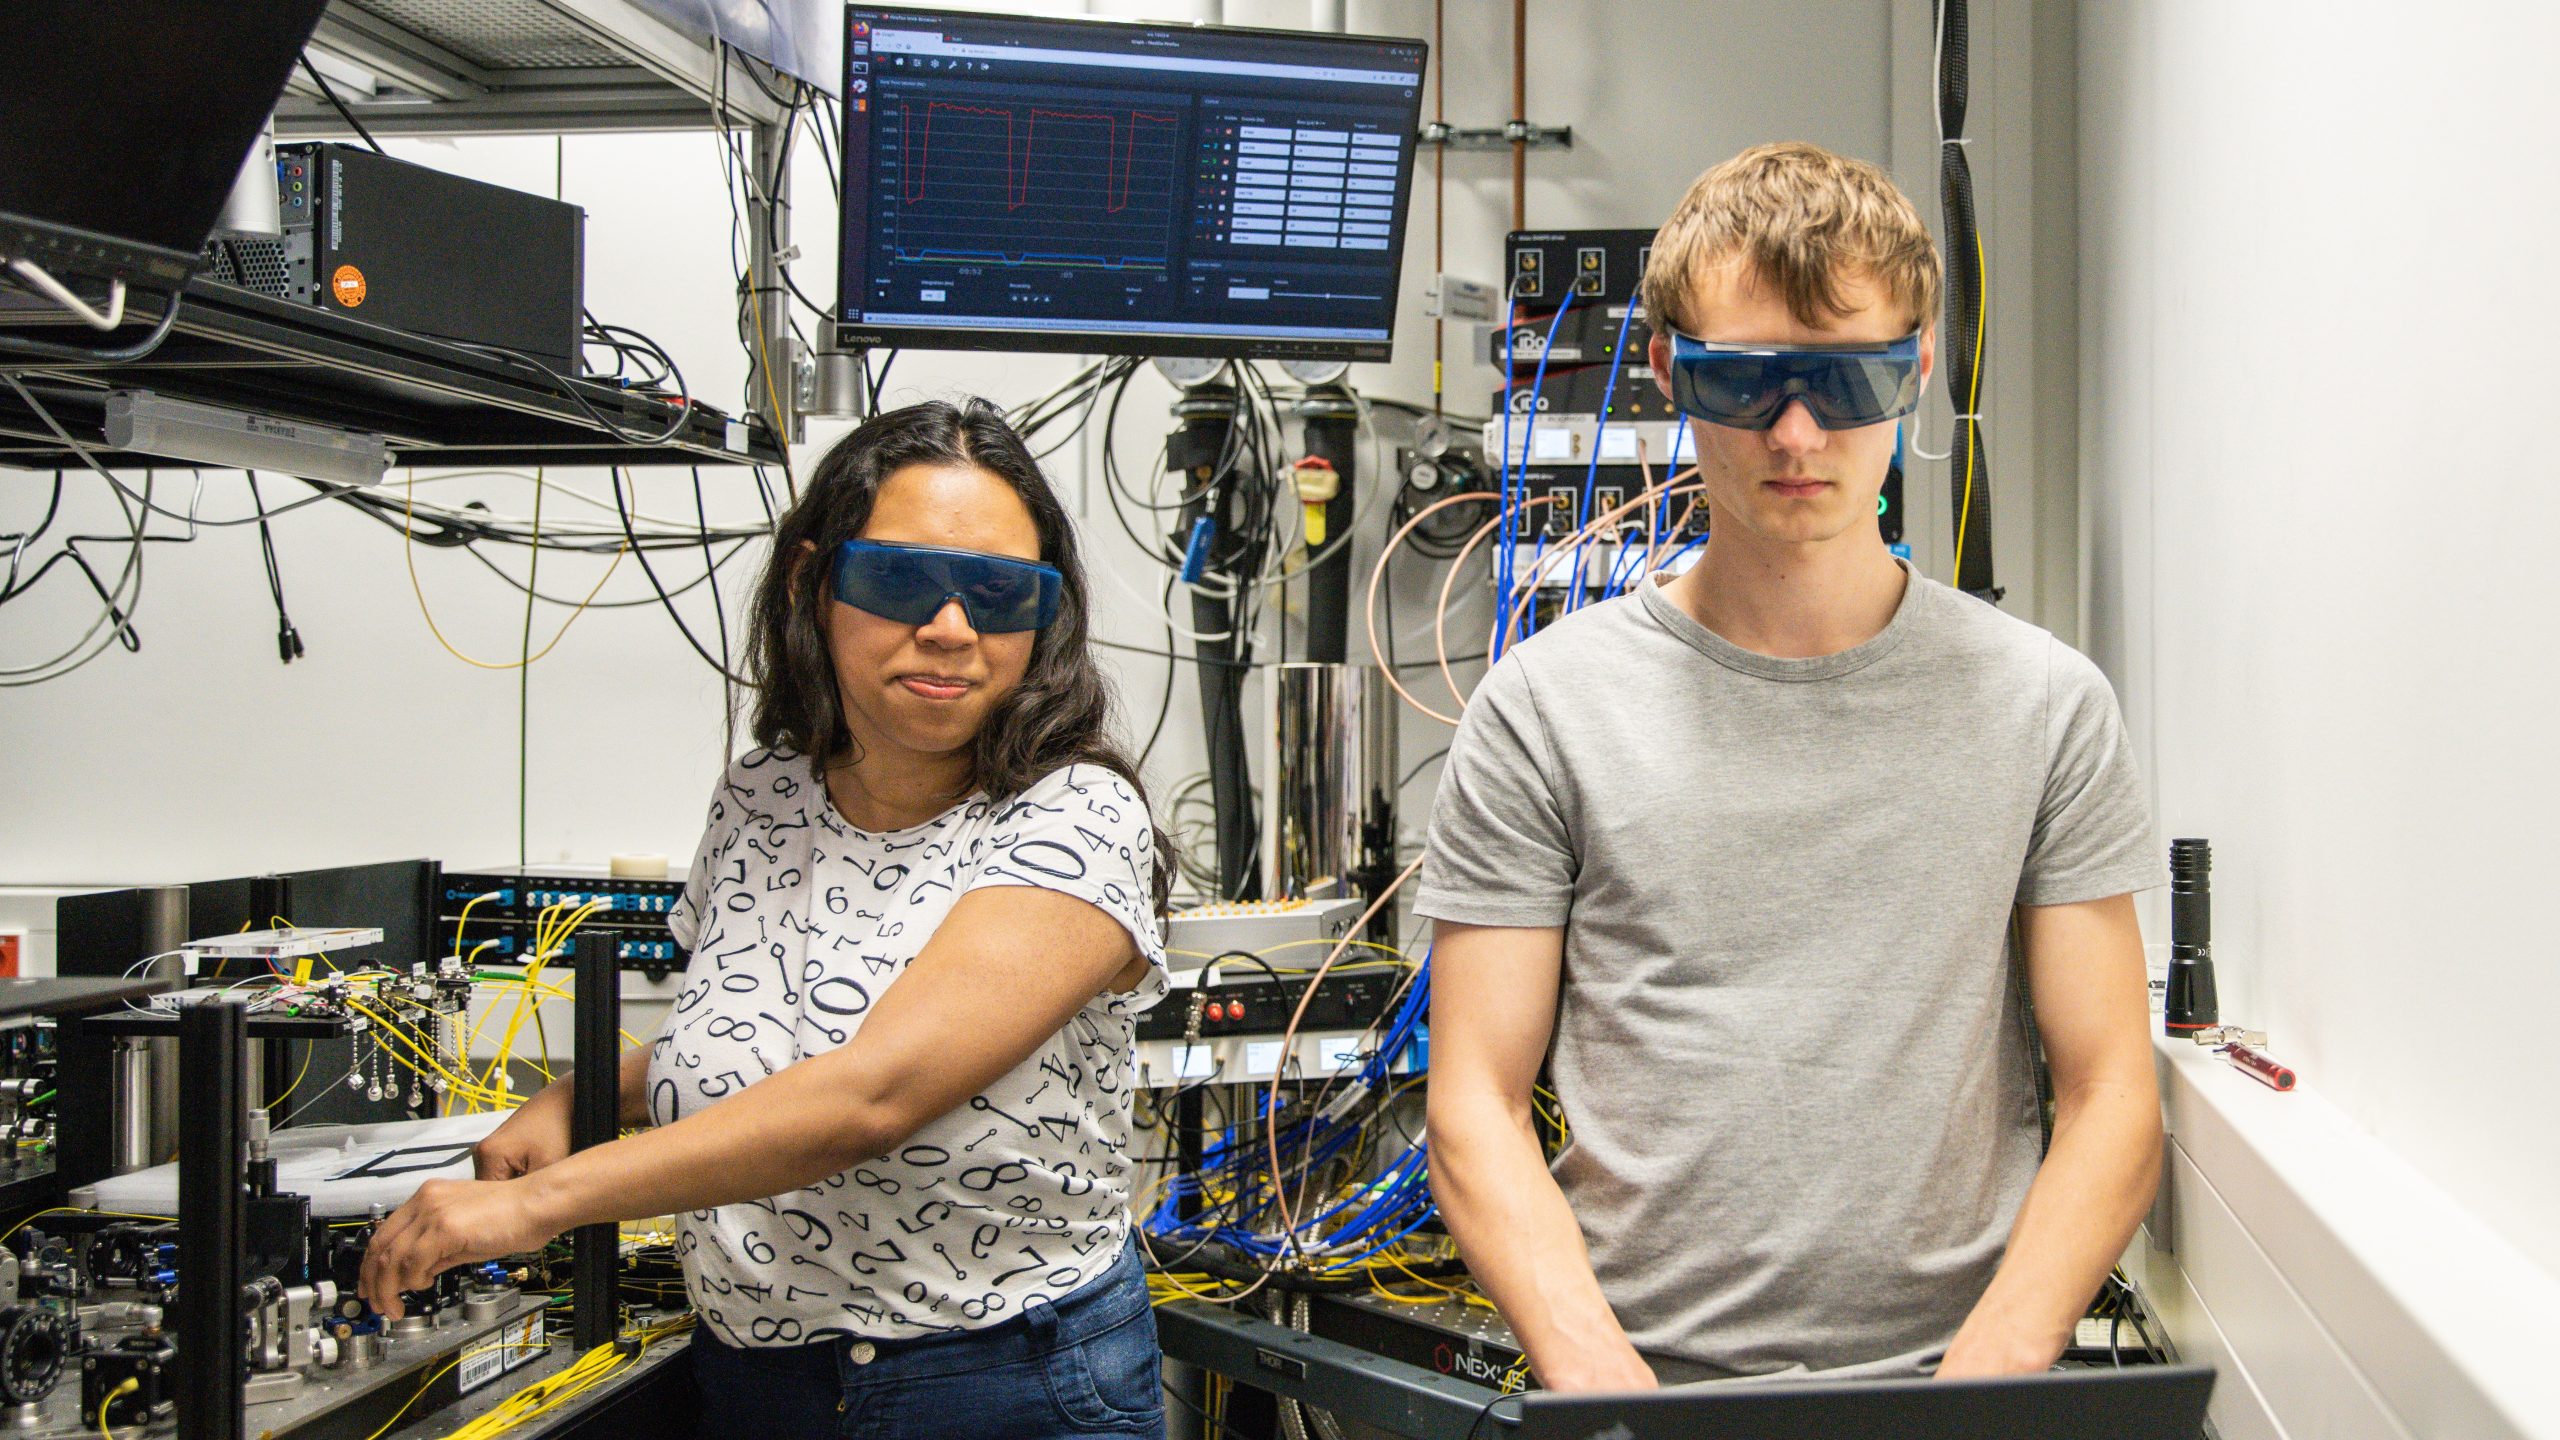 zwei Menschen stehen mit Schutzbrillen in einem Raum mit Technik. Eine Person arbeitet an der Technik und die andere Person am Laptop